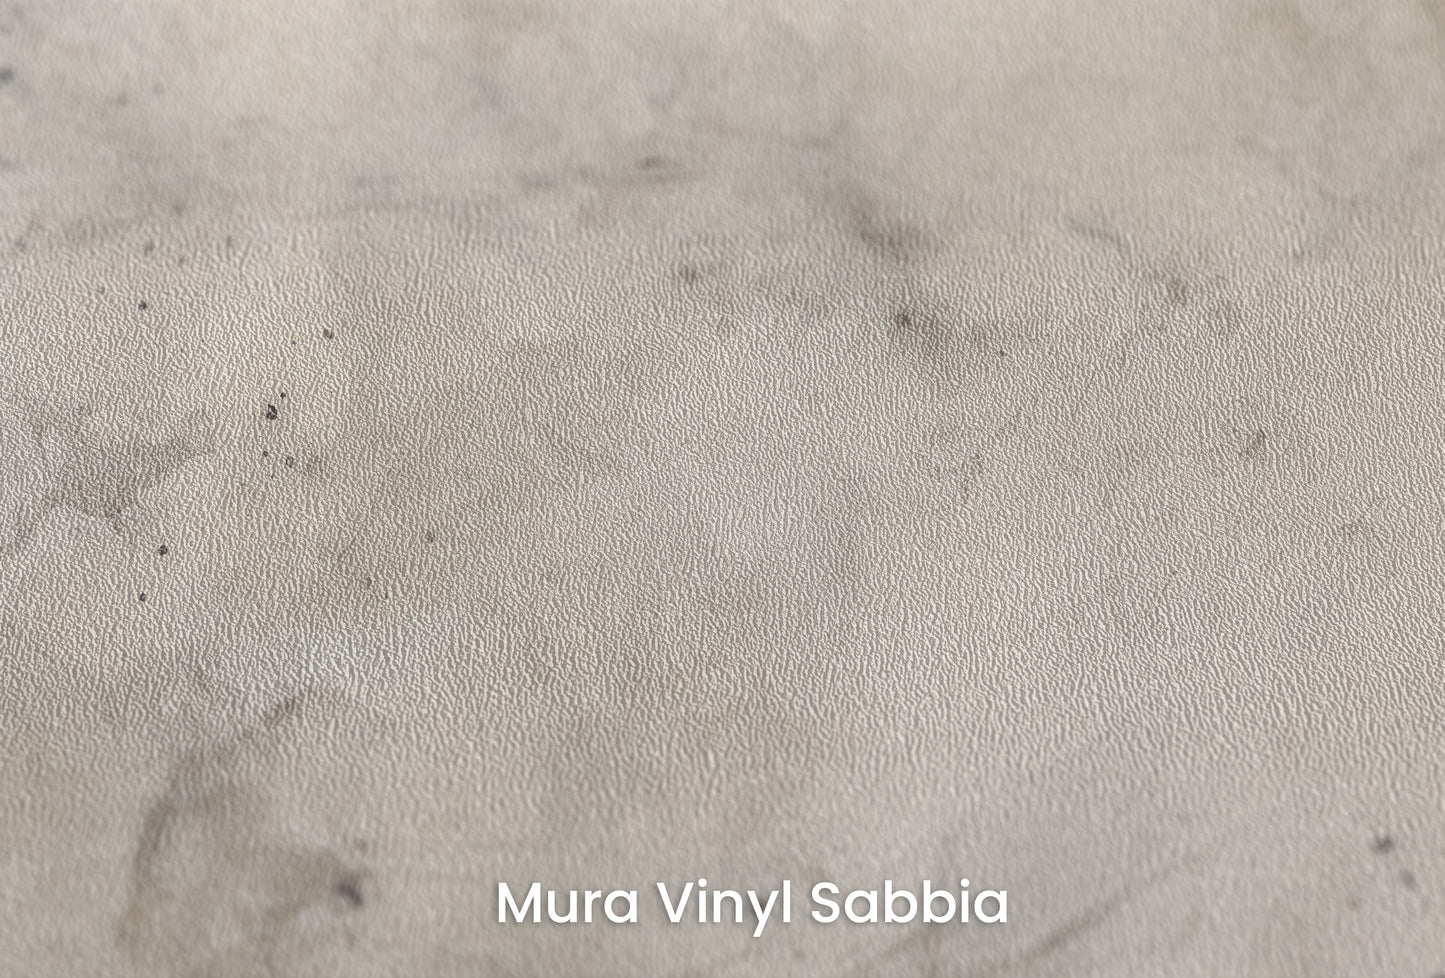 Zbliżenie na artystyczną fototapetę o nazwie SMOKE WHIRL ABSTRACT na podłożu Mura Vinyl Sabbia struktura grubego ziarna piasku.